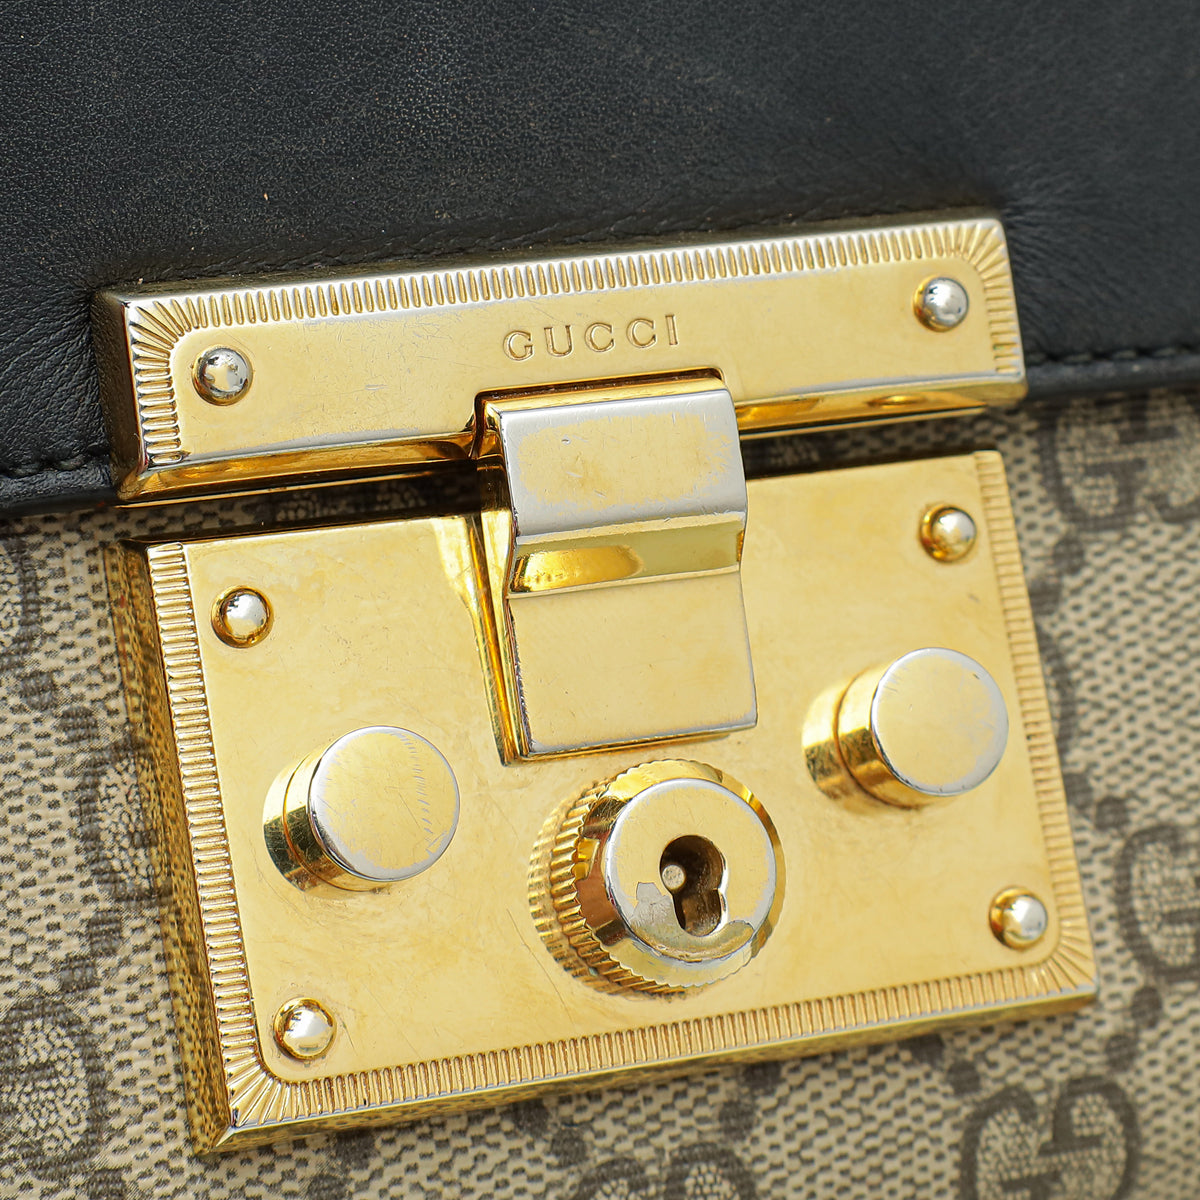 Gucci Tricolor GG Supreme Padlock Small Bag